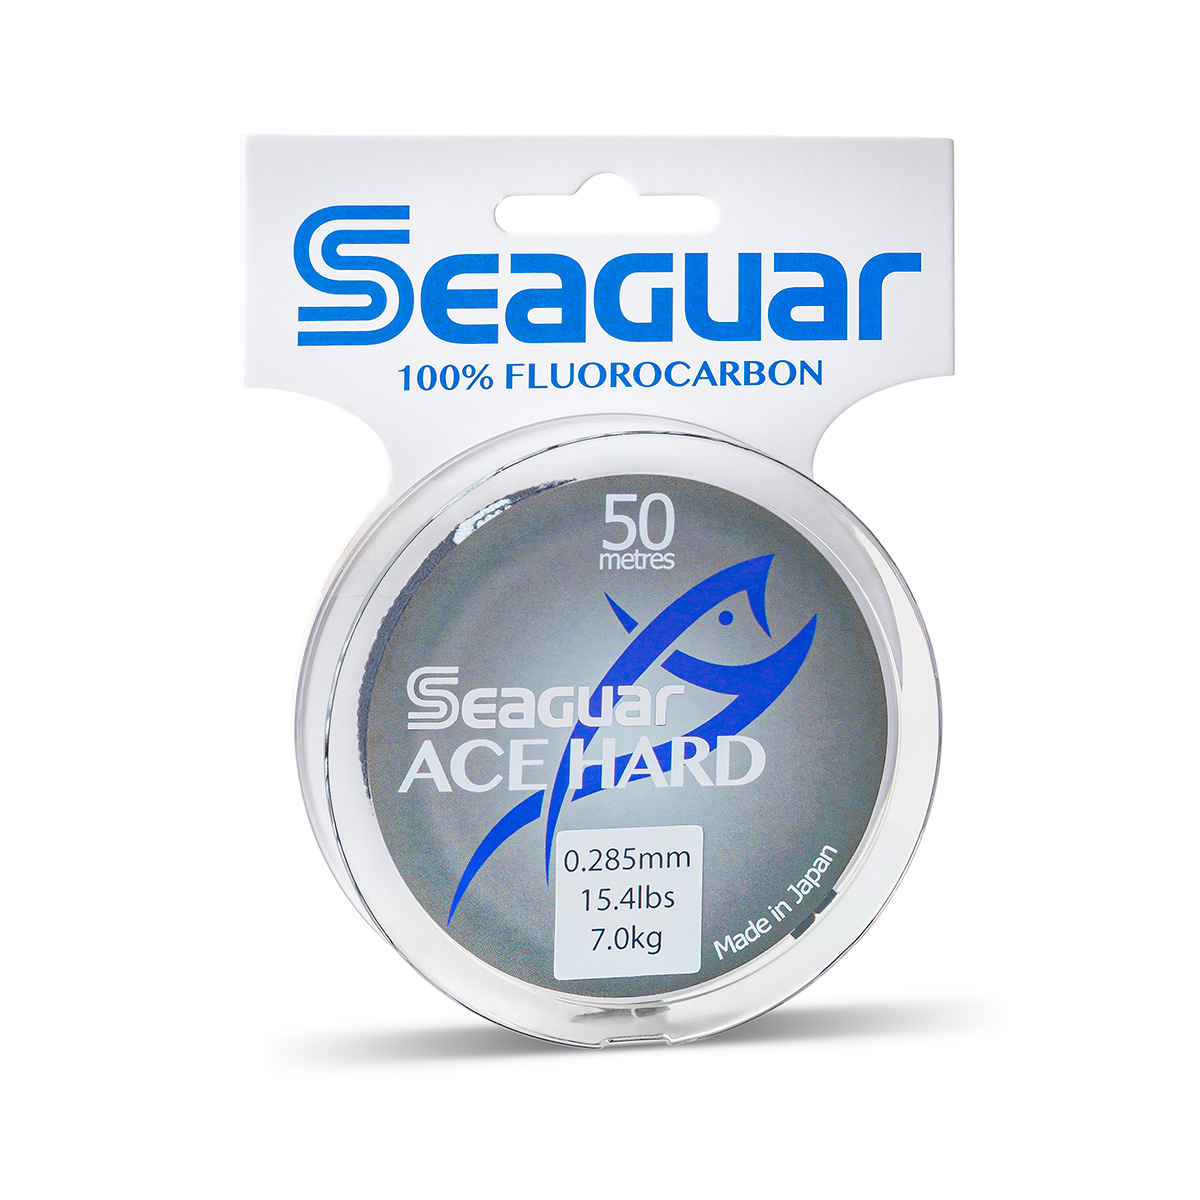 Seaguar ACE Hard - Seaguar